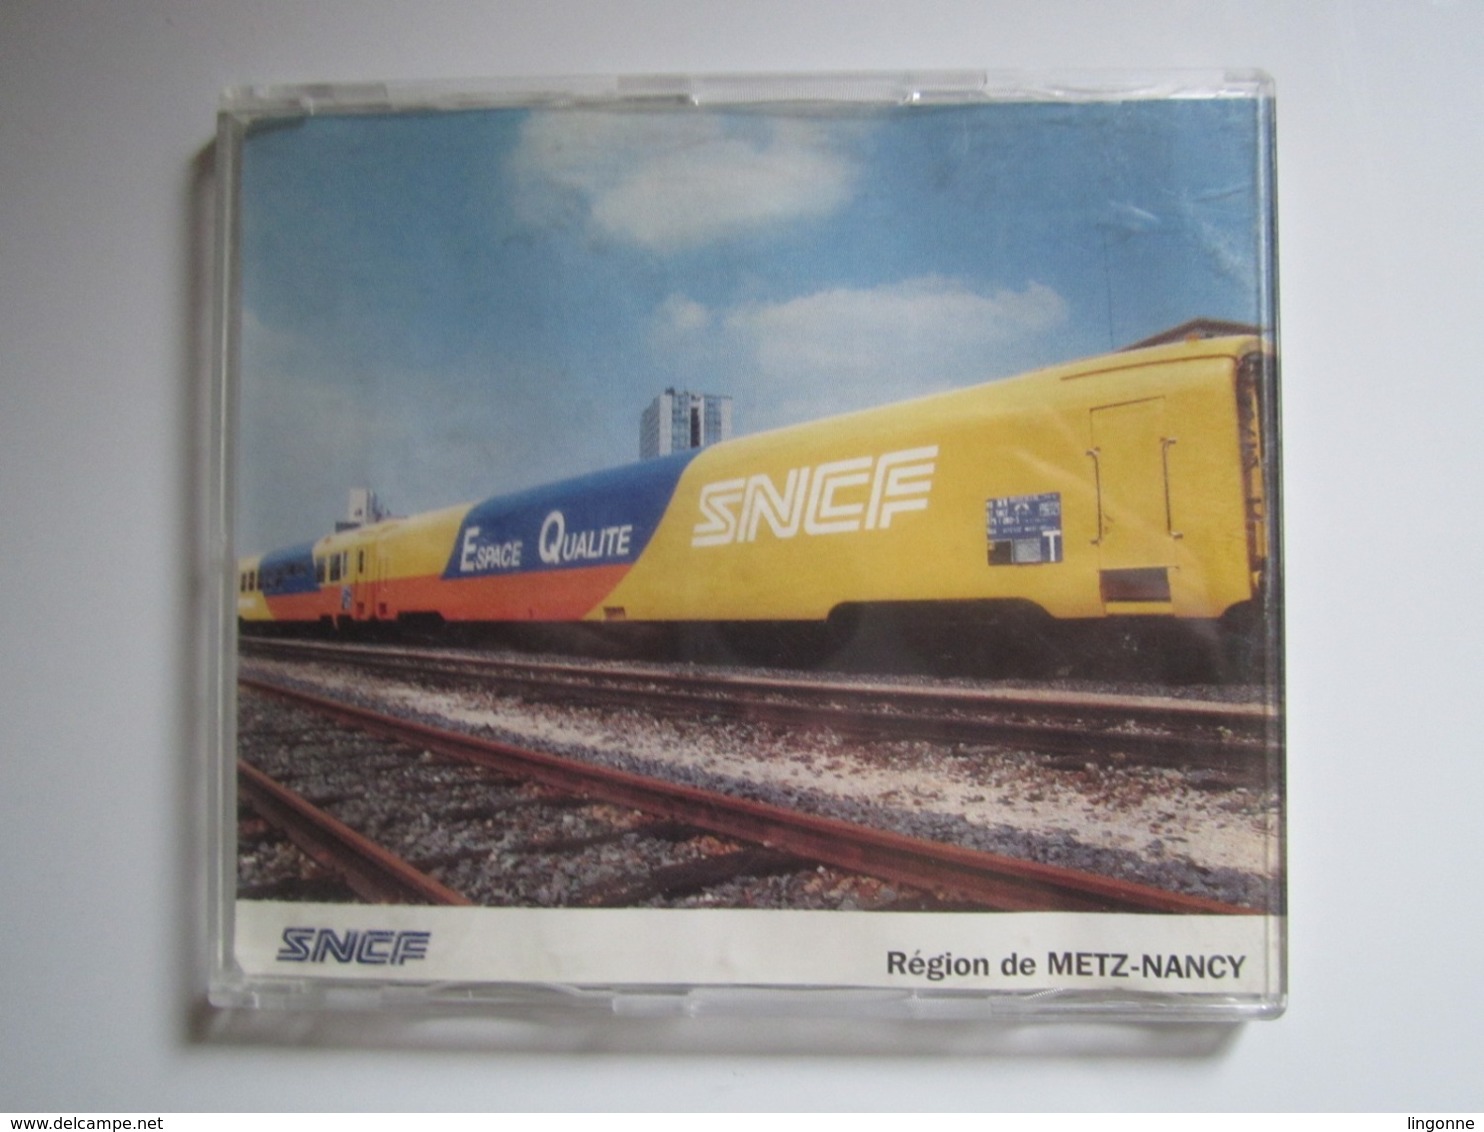 RARE CD SNCF 1992 Région De METZ-NANCY ESPACE QUALITÉ 1) ROCK AND RAIL 2) CA DECOIFFE A LA SNCF - Musique De Films